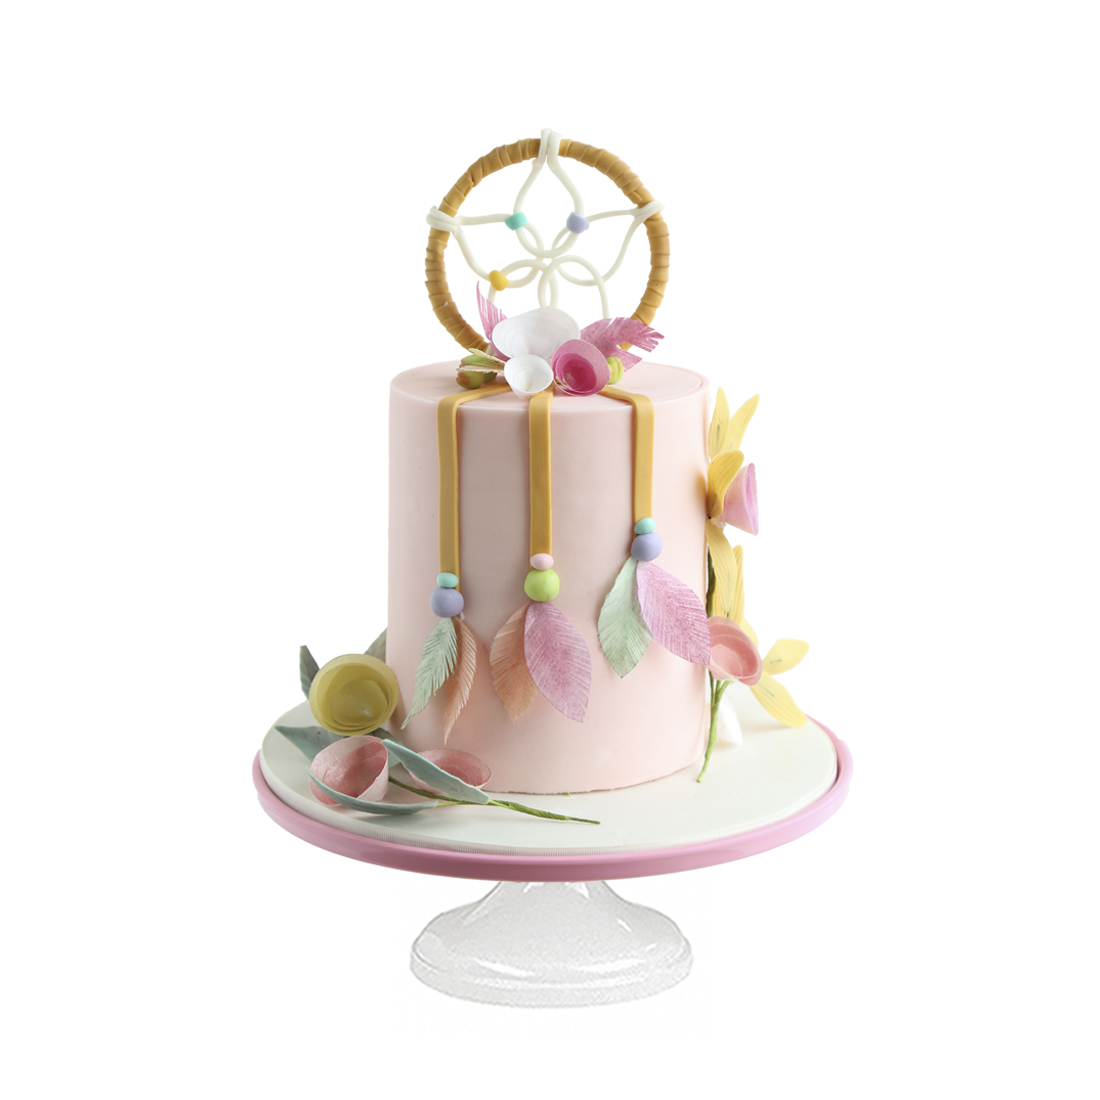 Dreams Cake - Pastel elaborado con atrapasueños de fondant -